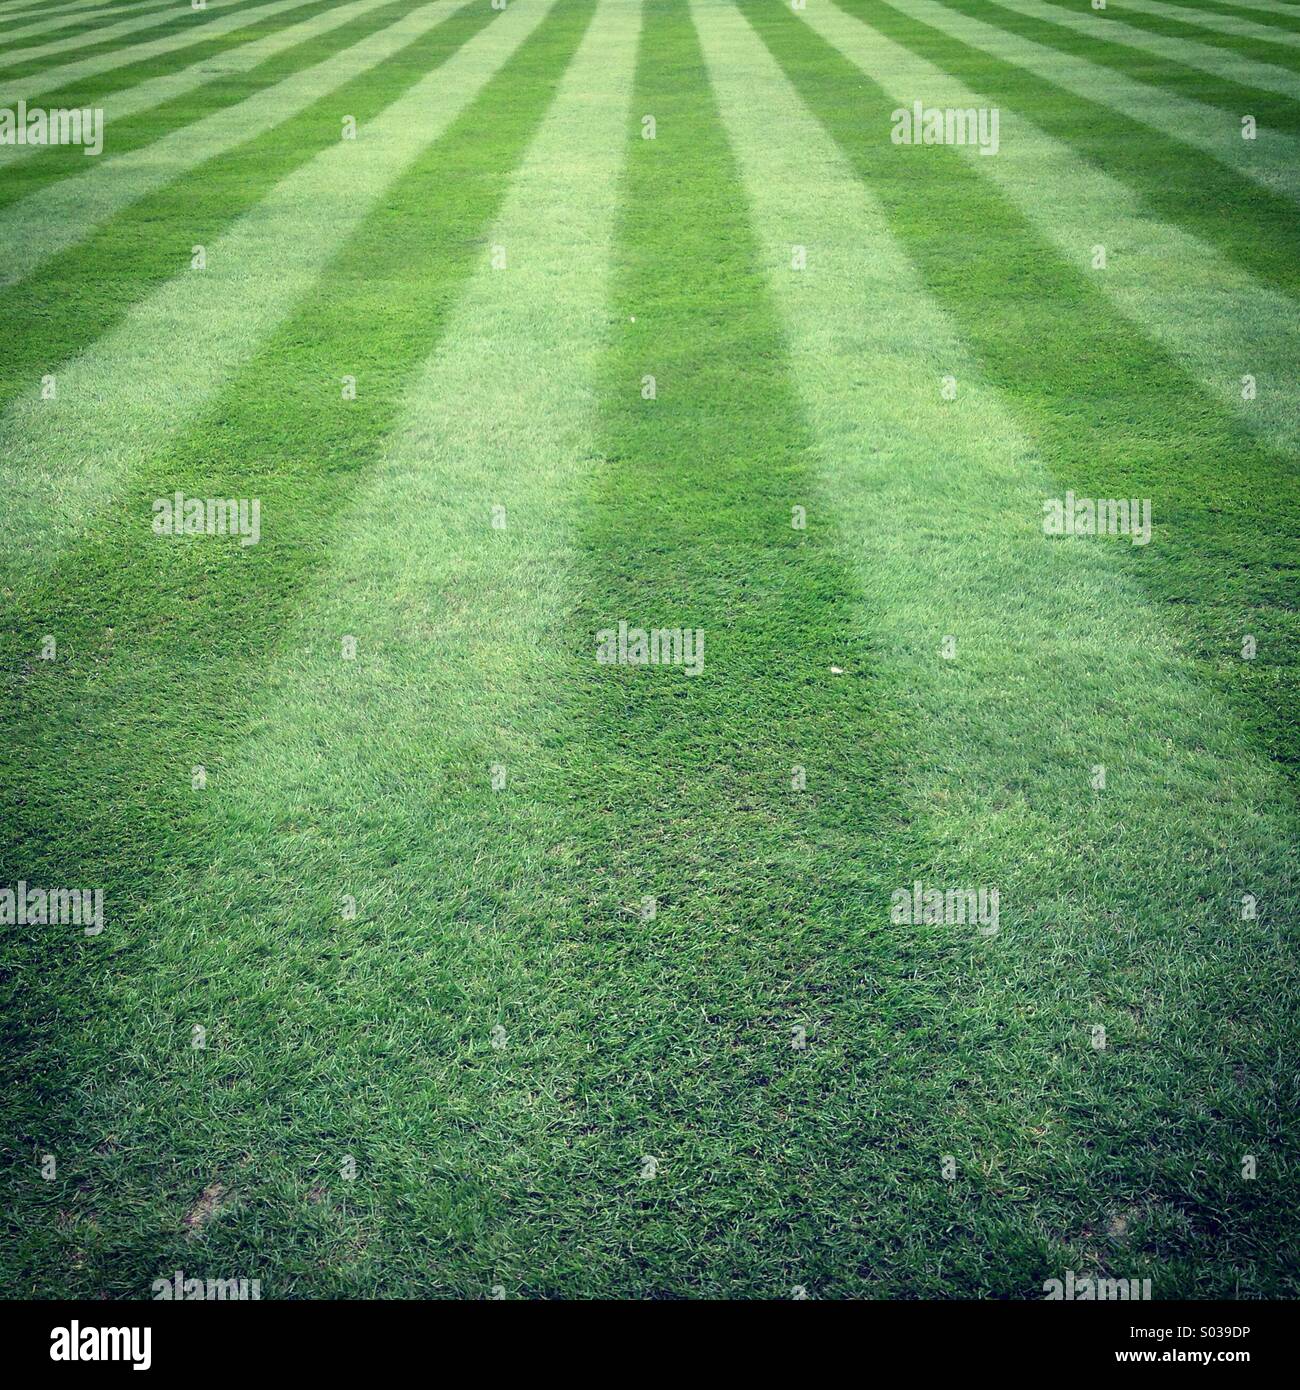 Well cut green stripey grass. Stock Photo